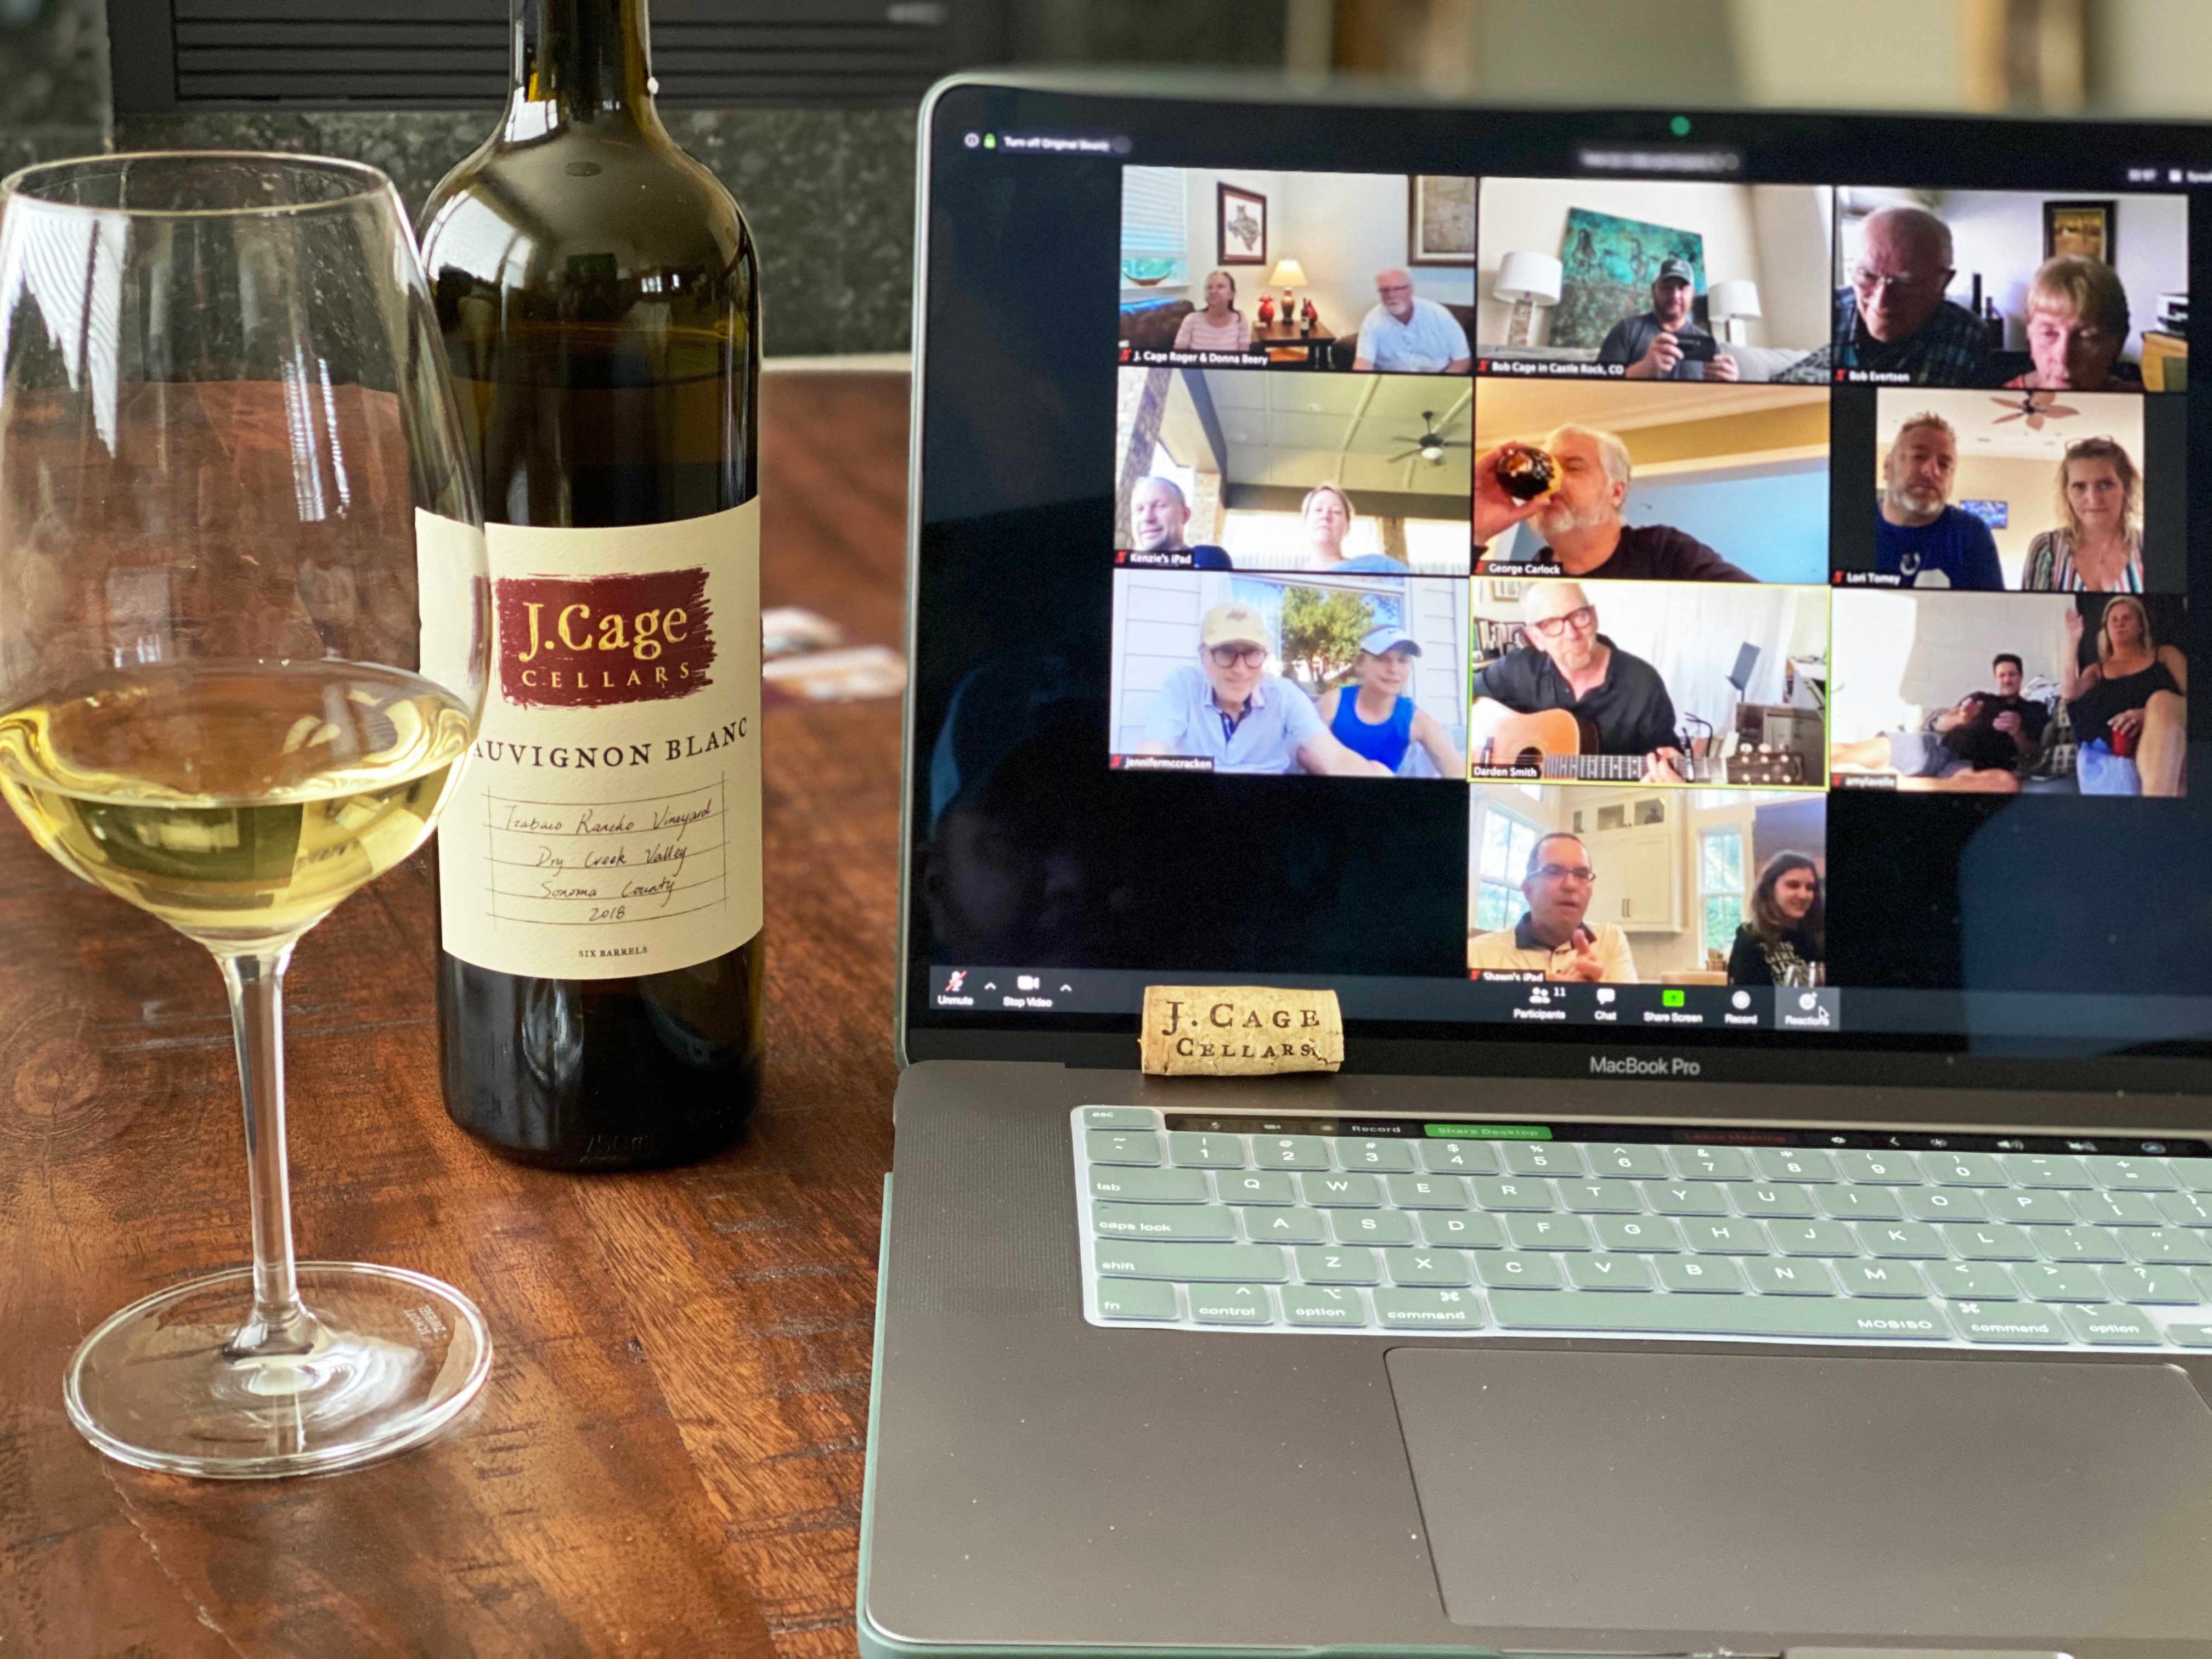 J. Cage Virtual Wine Tasting